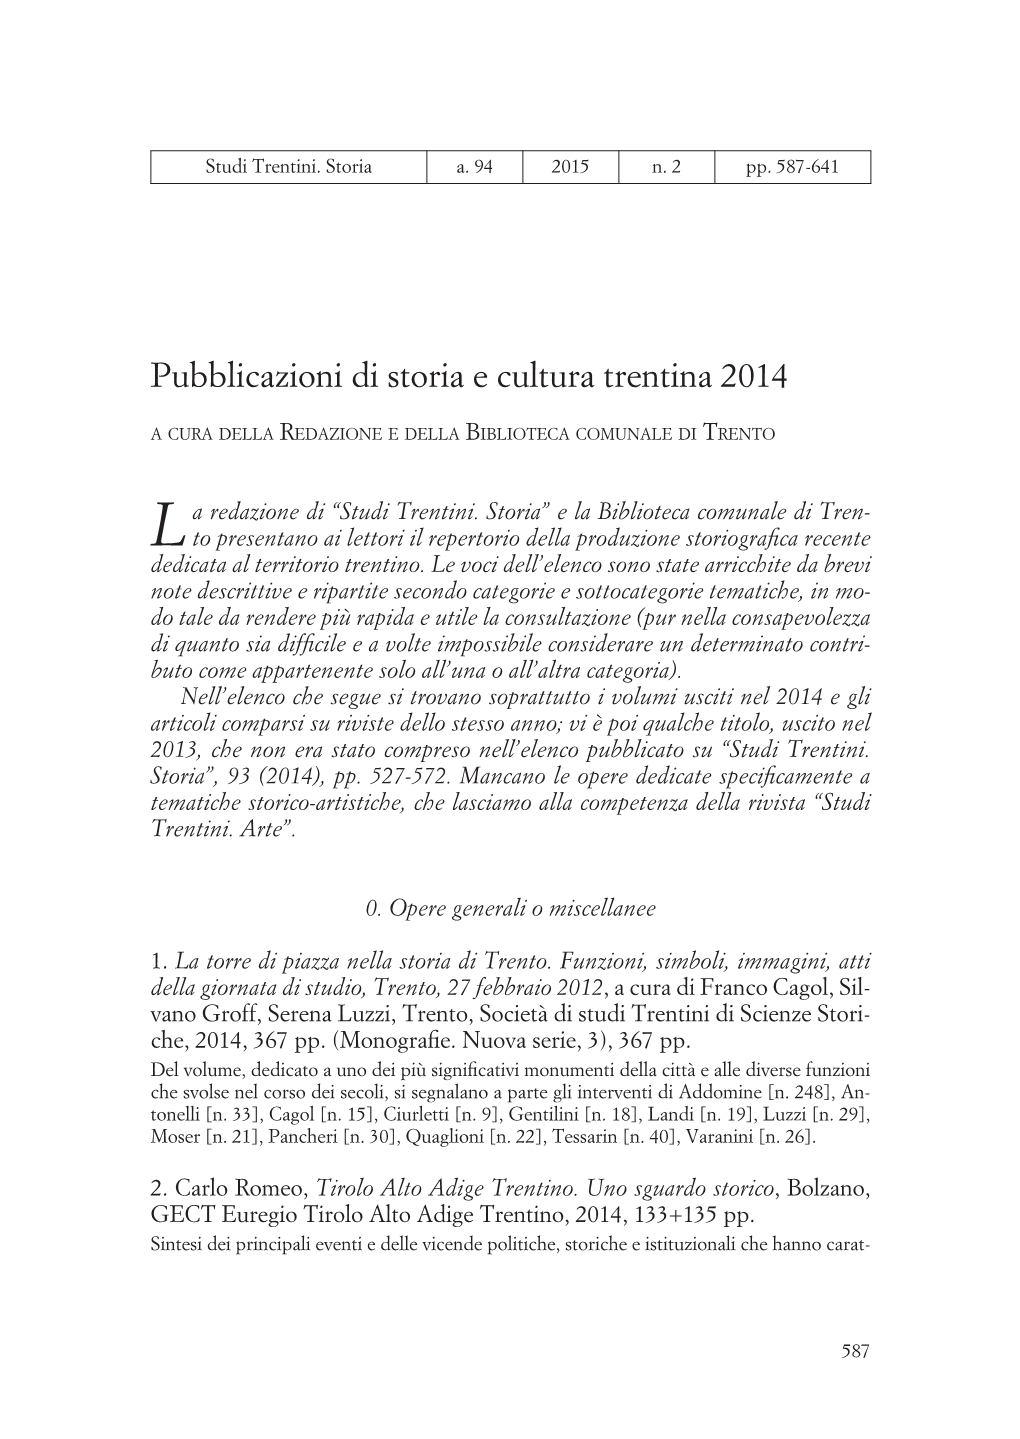 Pubblicazioni Di Storia E Cultura Trentina 2014 a Cura Della Redazione E Della Biblioteca Comunale Di Trento